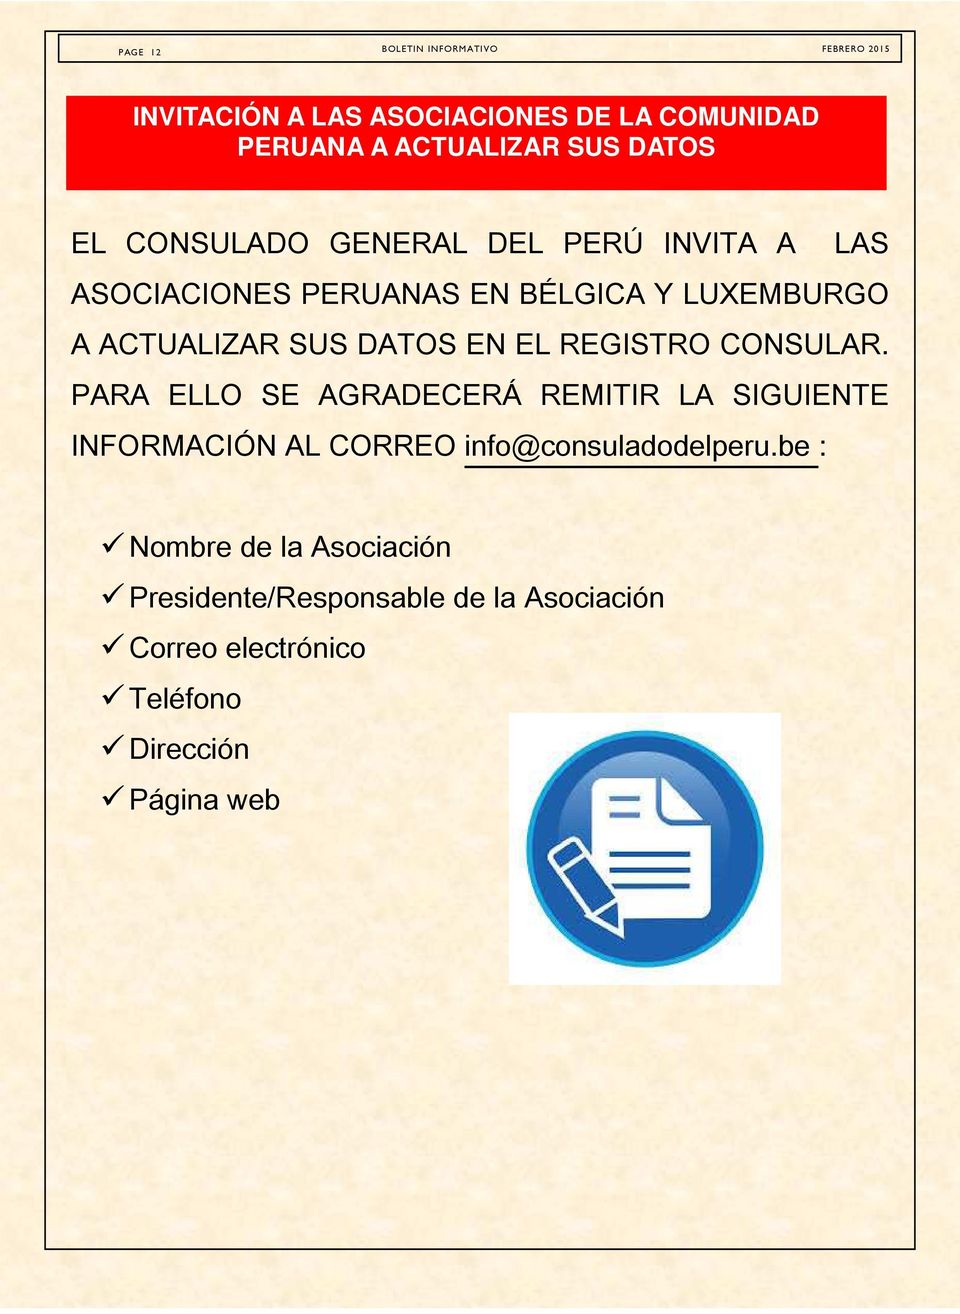 CONSULAR. PARA ELLO SE AGRADECERÁ REMITIR LA SIGUIENTE INFORMACIÓN AL CORREO info@consuladodelperu.